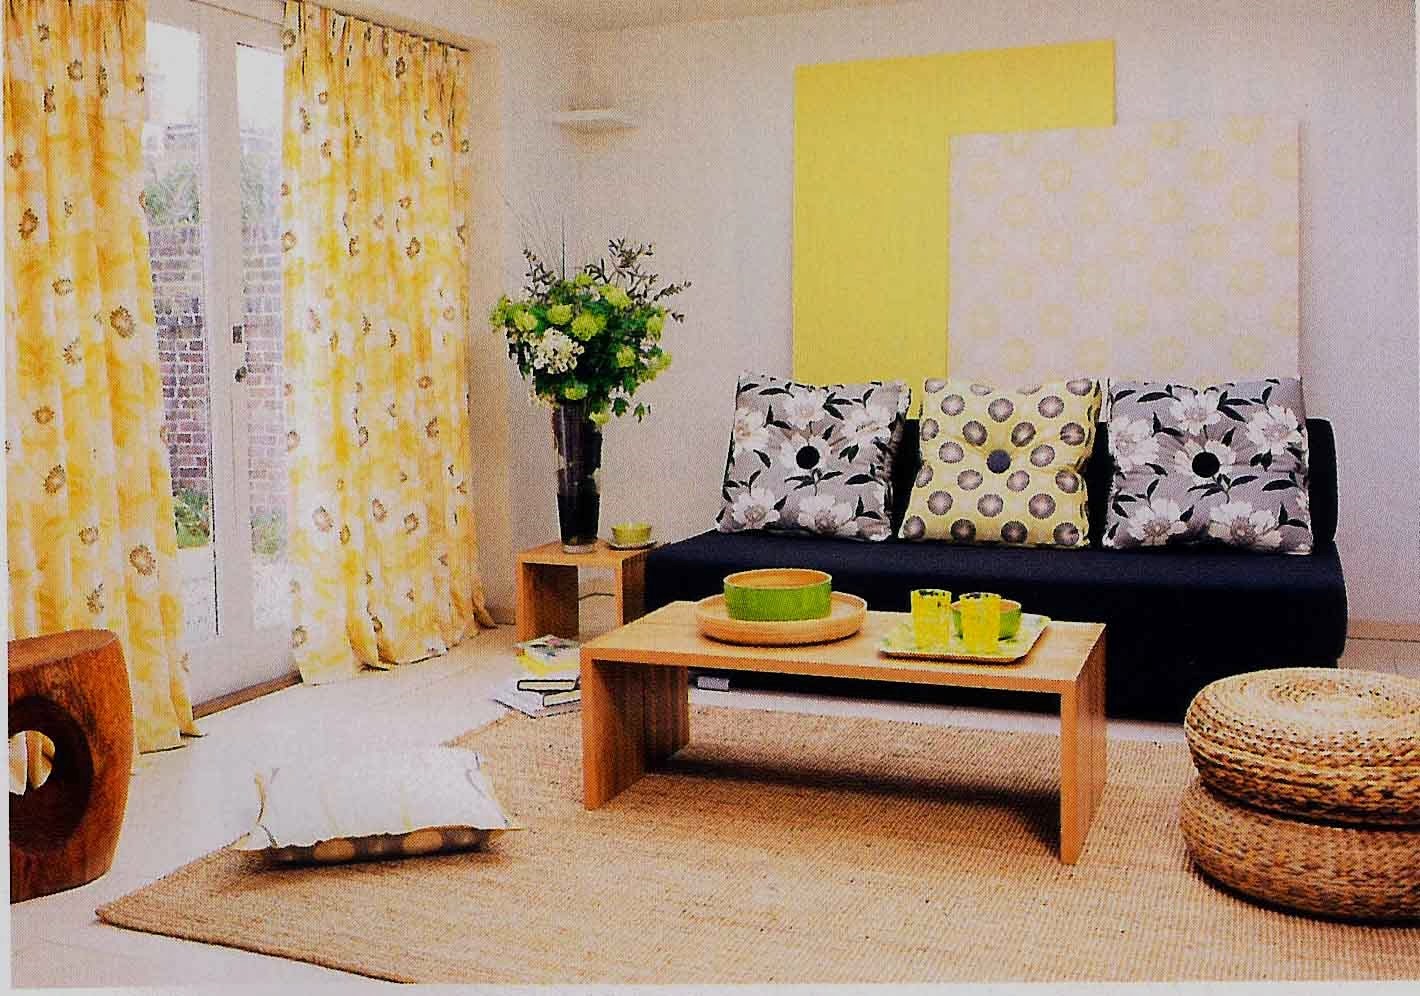 Desain Sofa Ruang Keluarga Kecil Sederhana Minimalis